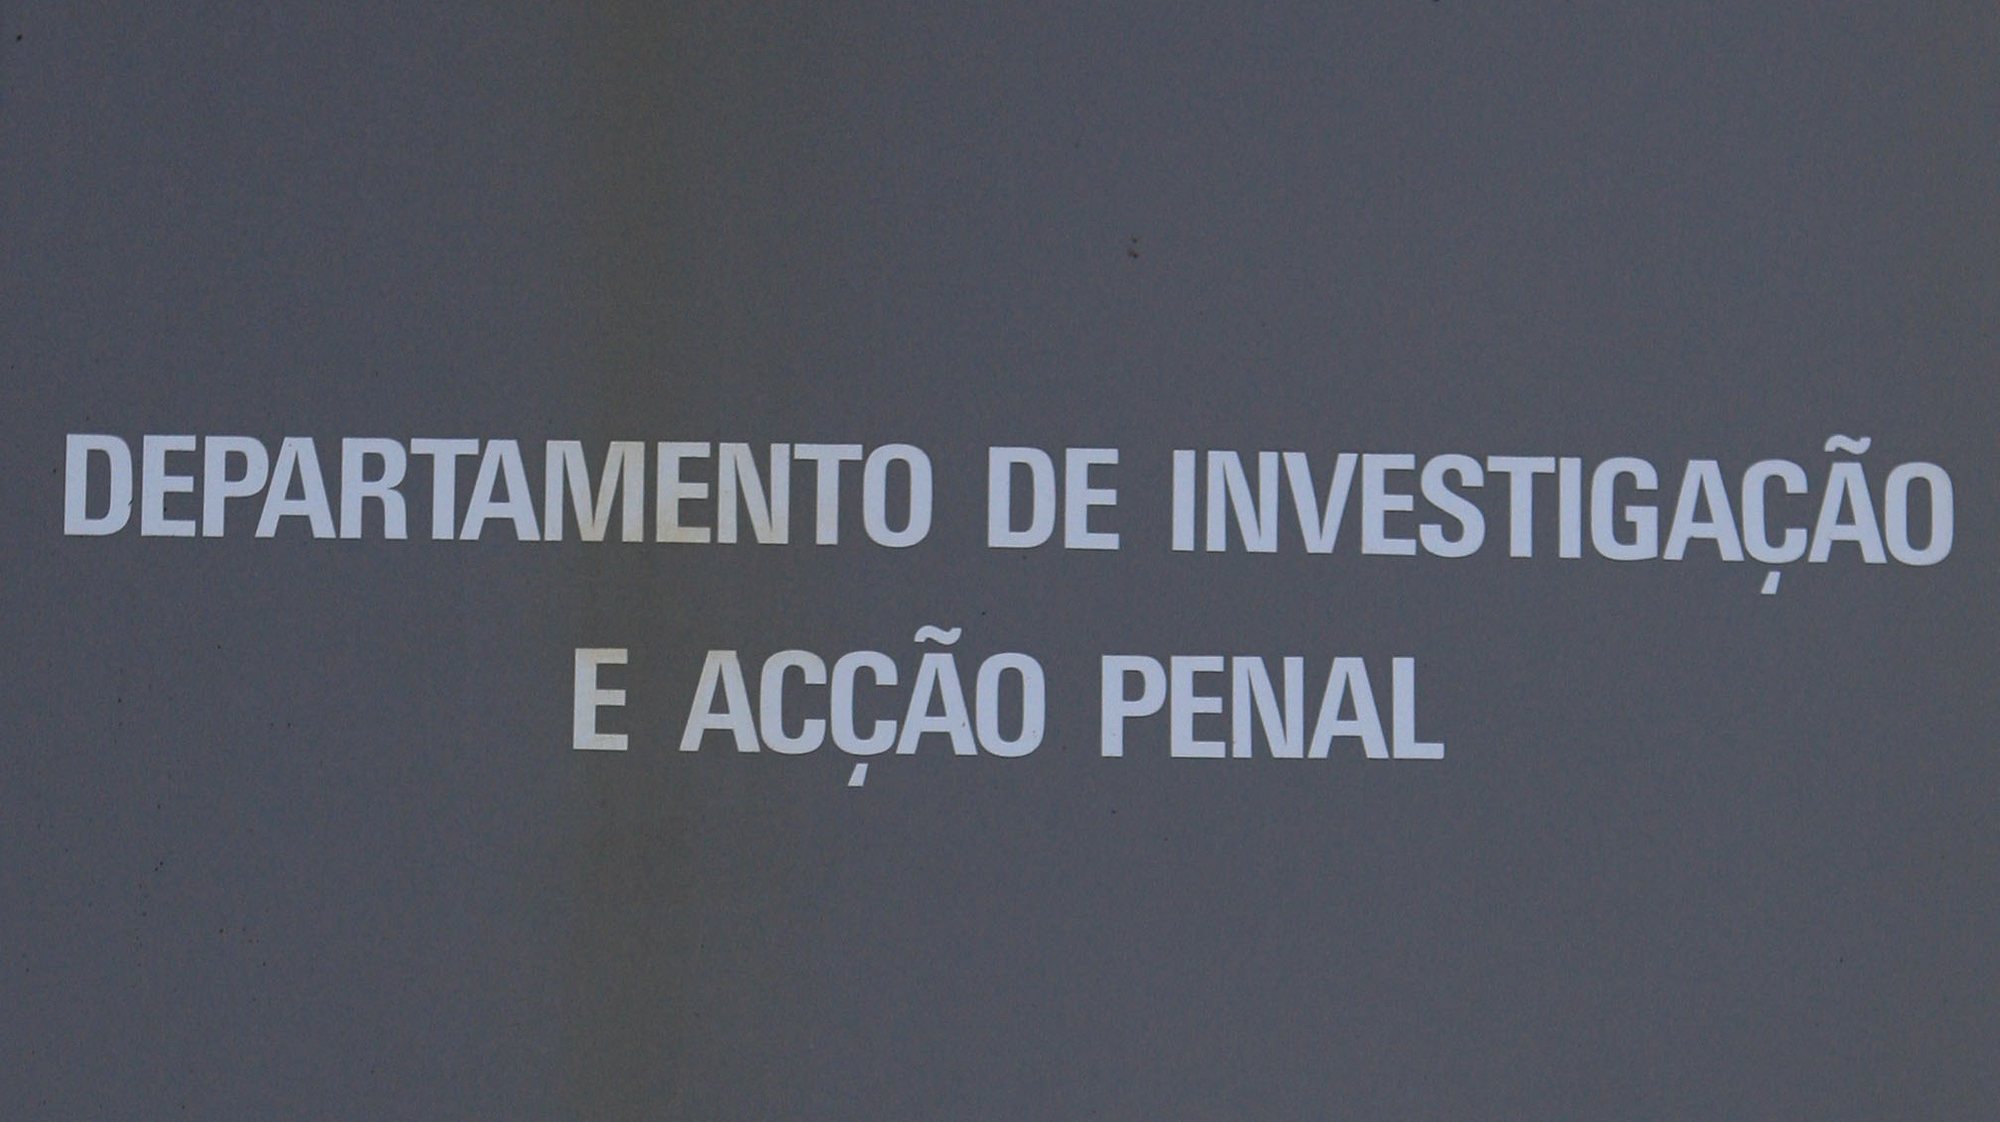 Placa do DIAP, Departamento de Investigação e Acção Penal, colocada à entrada das instalações do DIAP, Porto a 18 de Fevereiro de 2008.